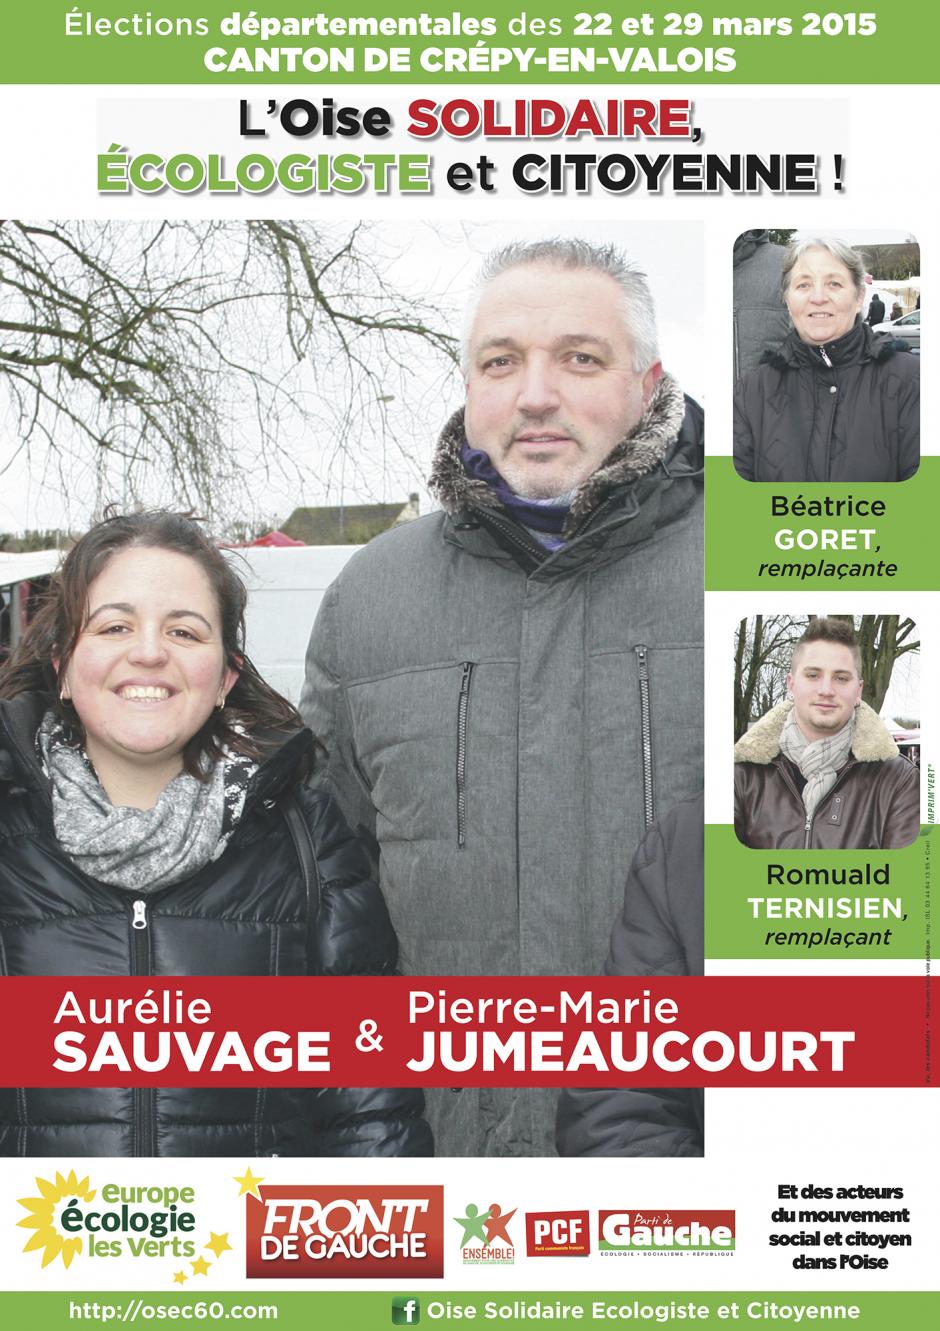 19 mars, Verberie - Rencontre avec les candidats du canton de Crépy-en-Valois